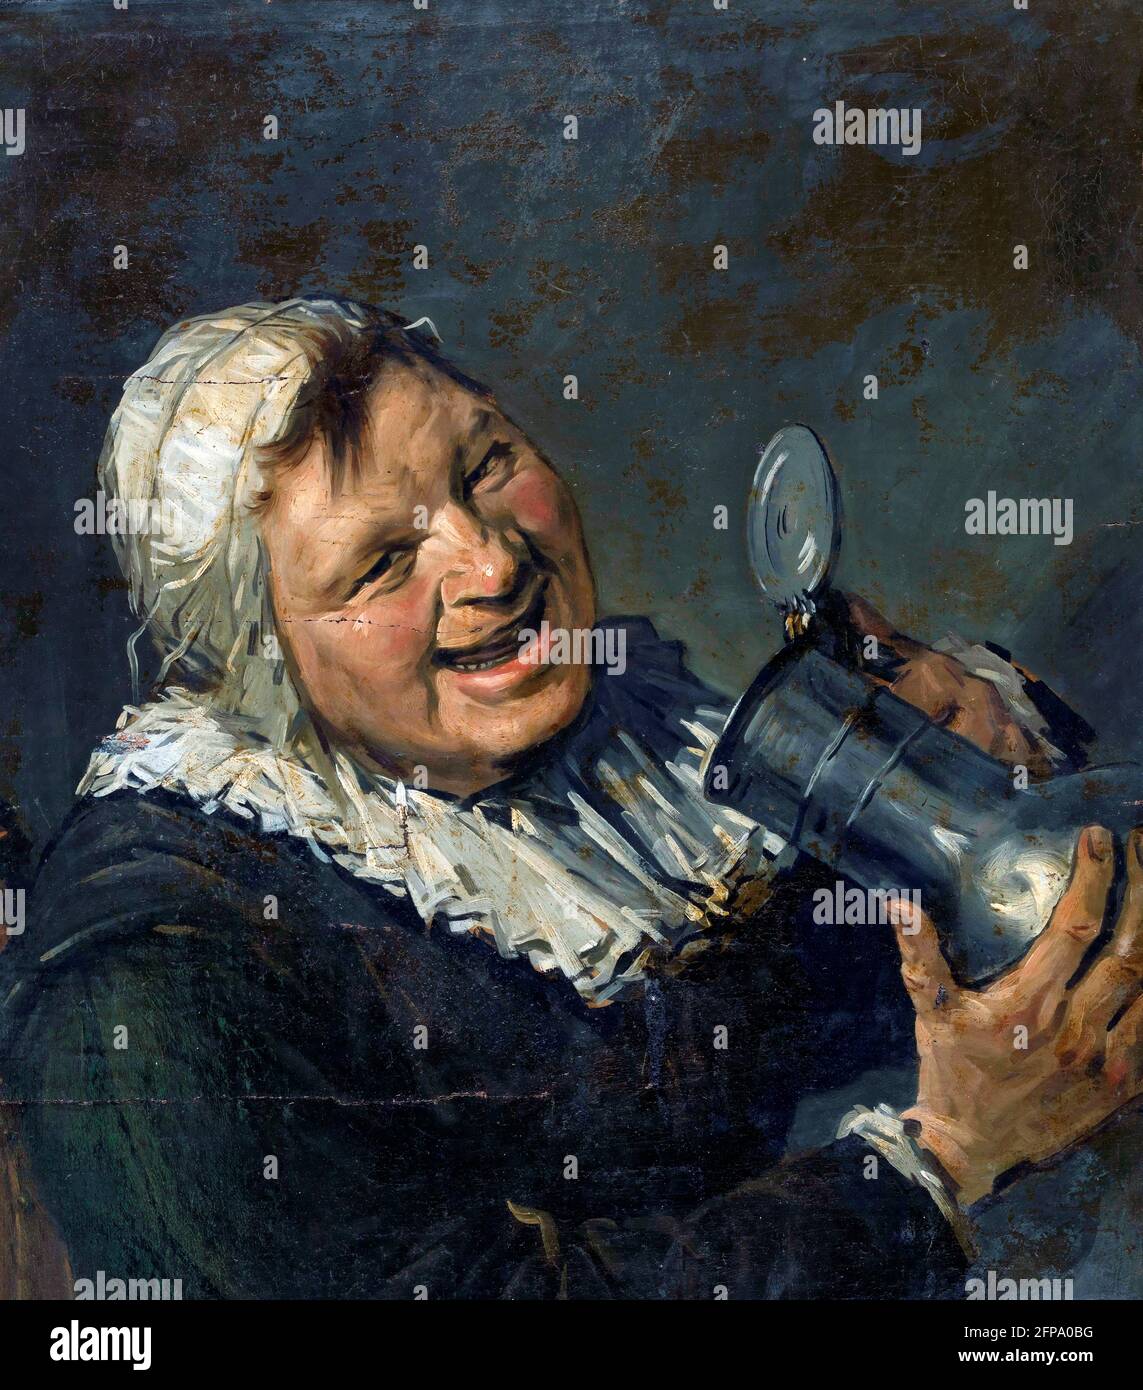 Han van Meegeren. Malle Babbe, une peinture dans le style de Frans Hals par le célèbre forger d'art hollandais, Henricus Antonius 'Han' van Meegeren (1889-1947), huile sur toile, 1930-1940 Banque D'Images